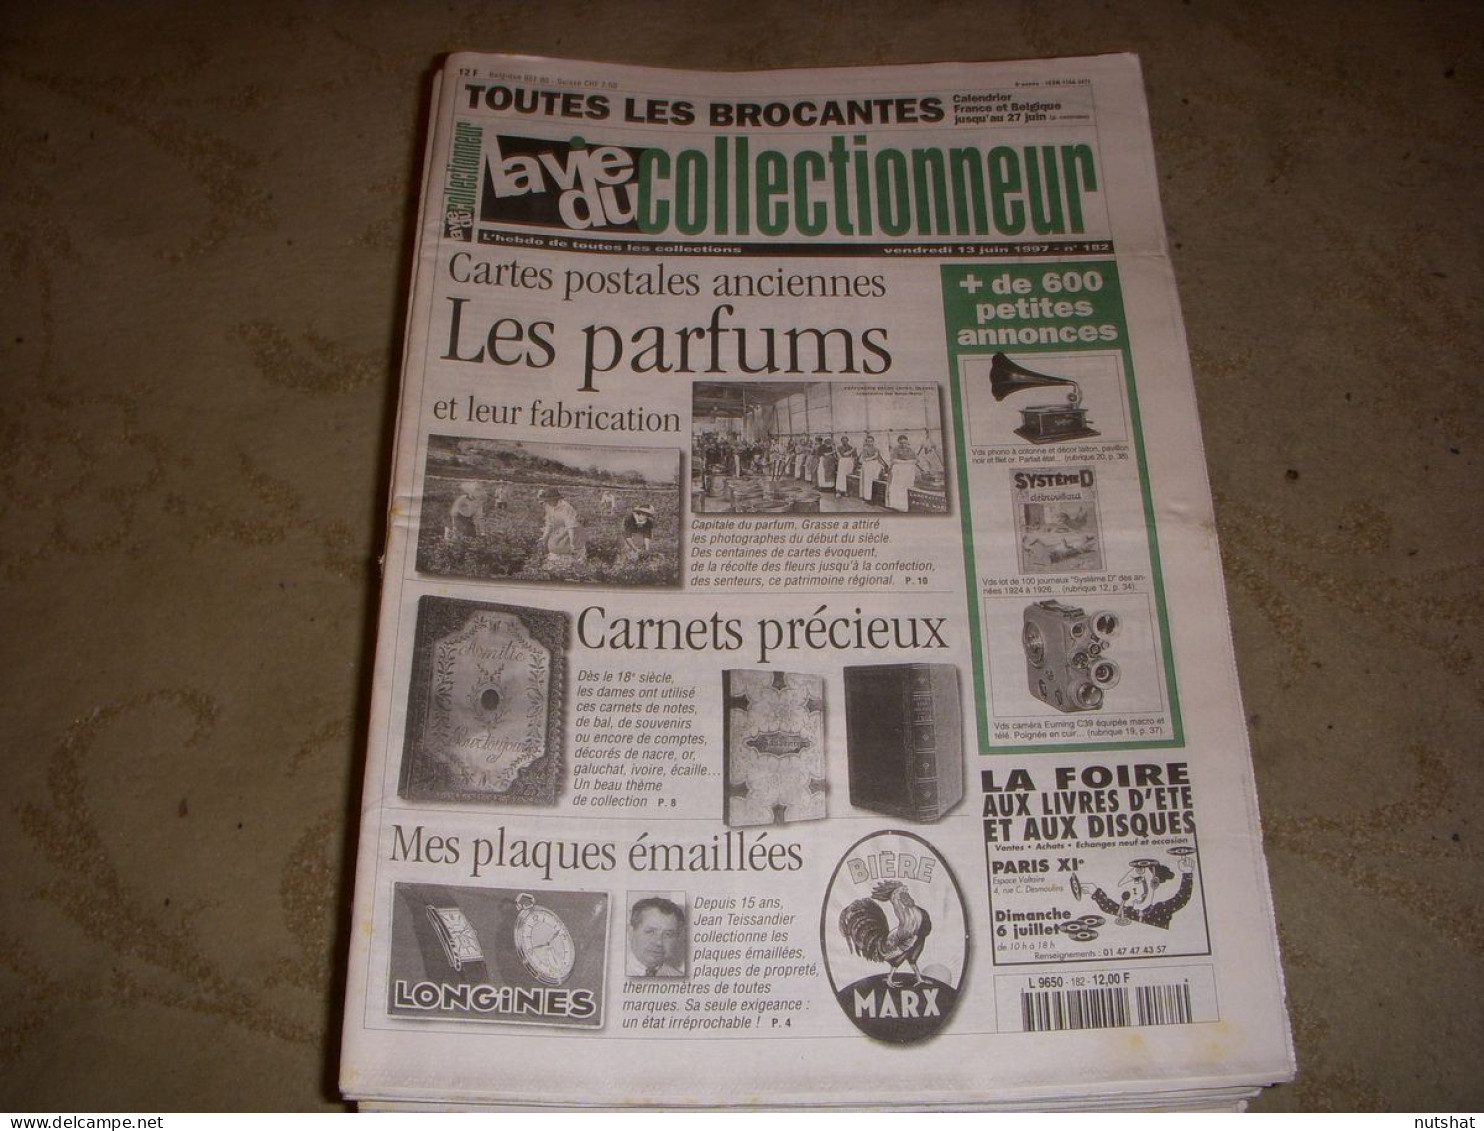 LVC VIE Du COLLECTIONNEUR 182 13.06.1997 PARFUM CARNET PRECIEUX PLAQUE EMAILL  - Brocantes & Collections